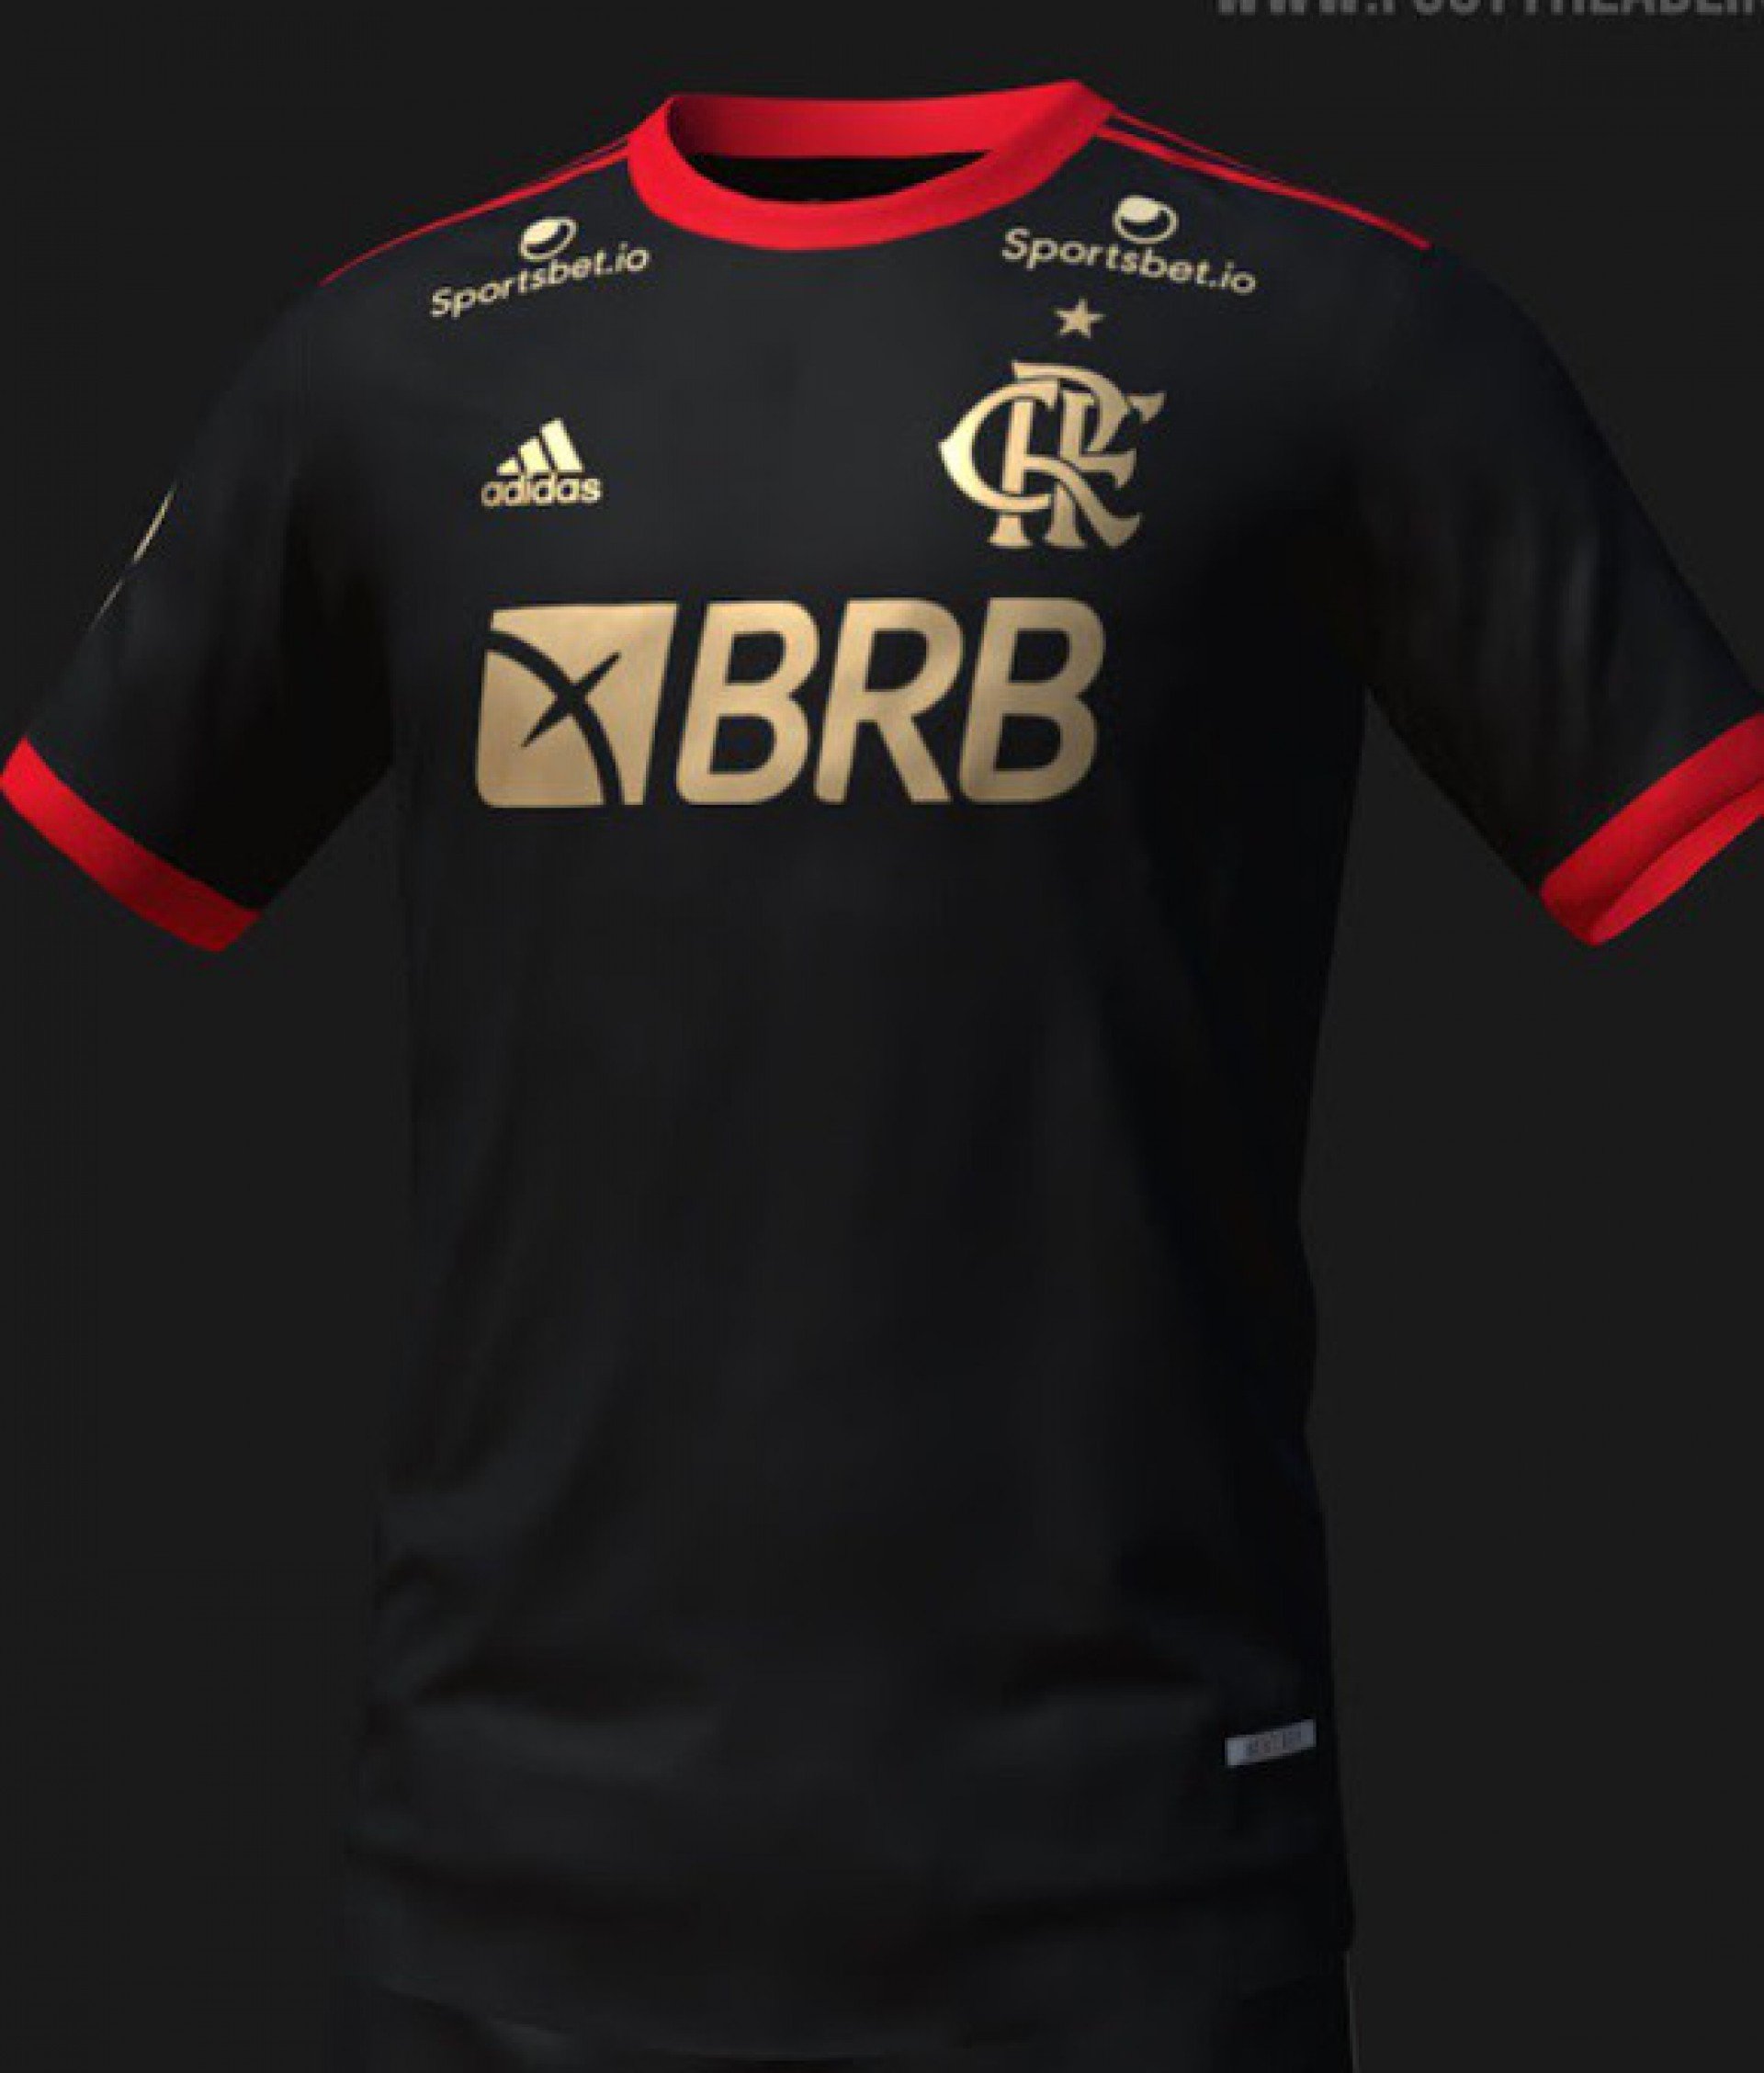 Site vaza imagem da nova camisa 3 do Flamengo; confira! MH Flamengo